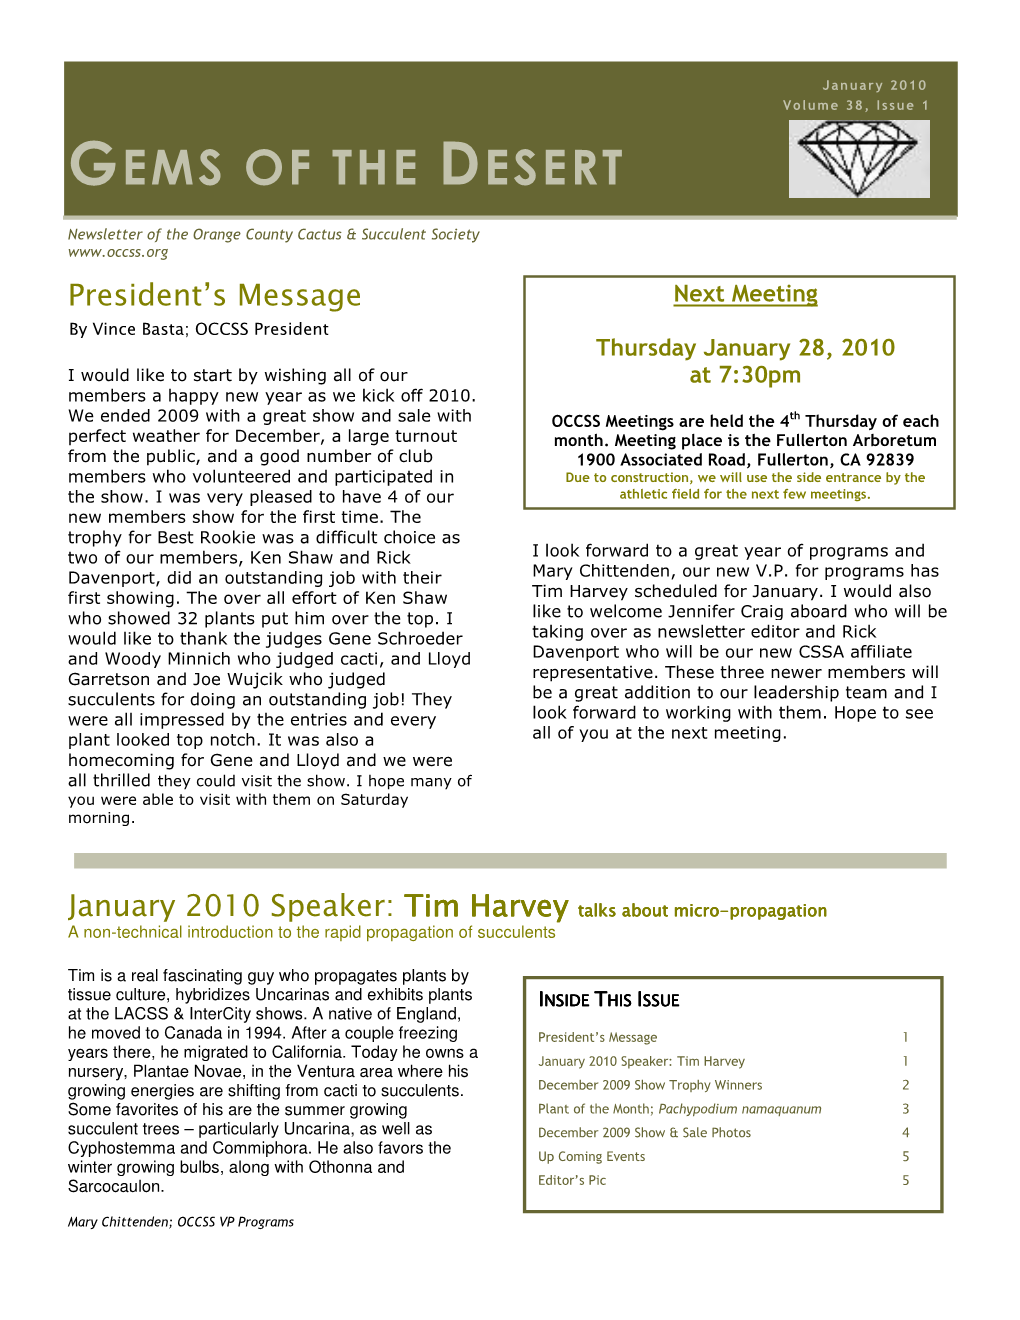 Gems of the Desert